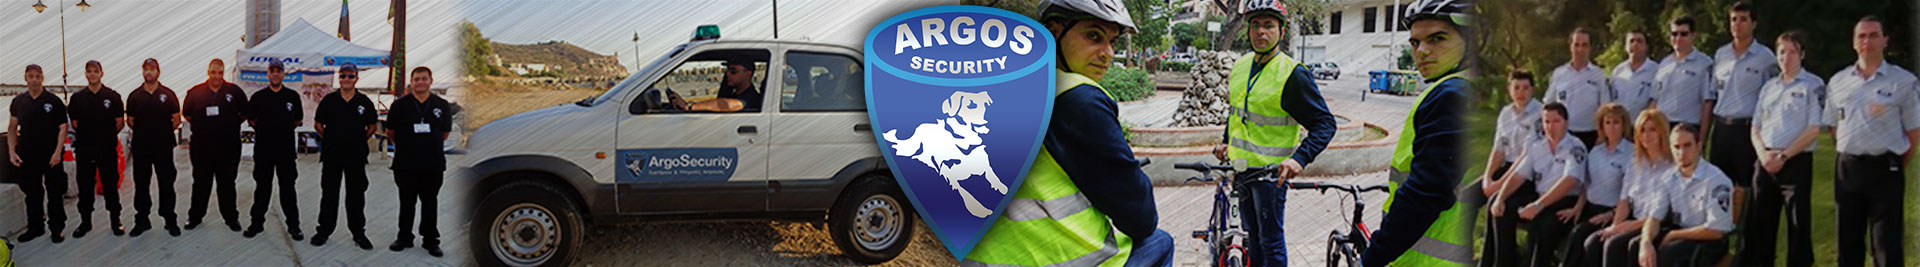 ARGOS SECURITY